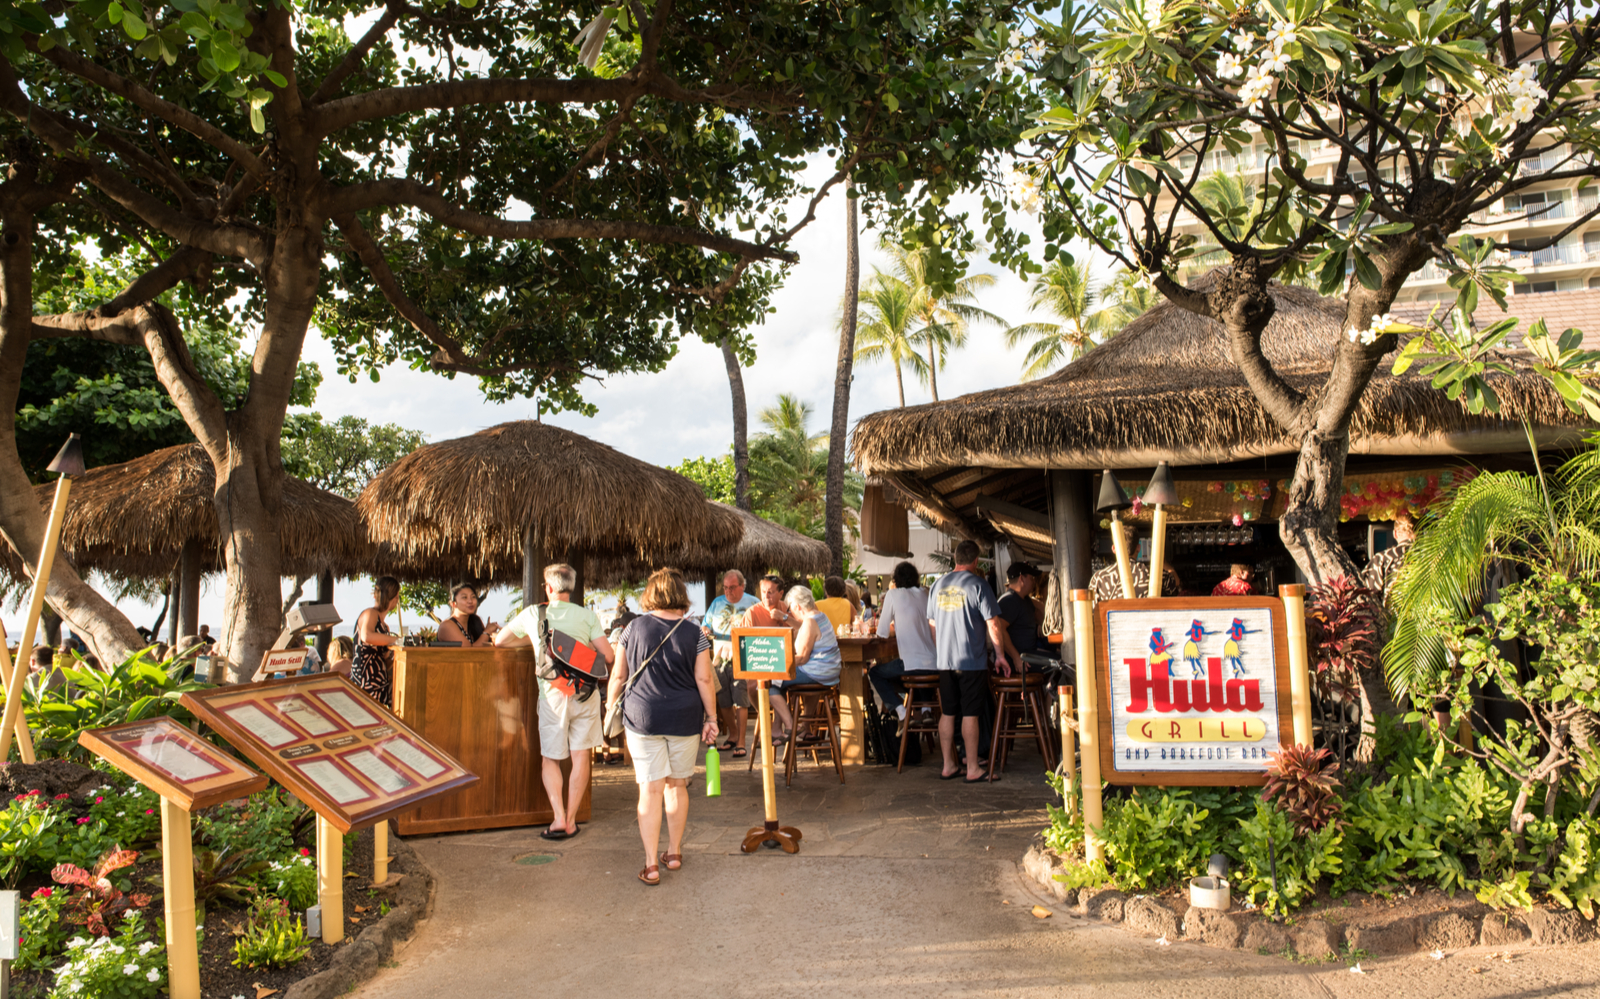 15 Best Restaurants in Maui, Hawaii in 2022